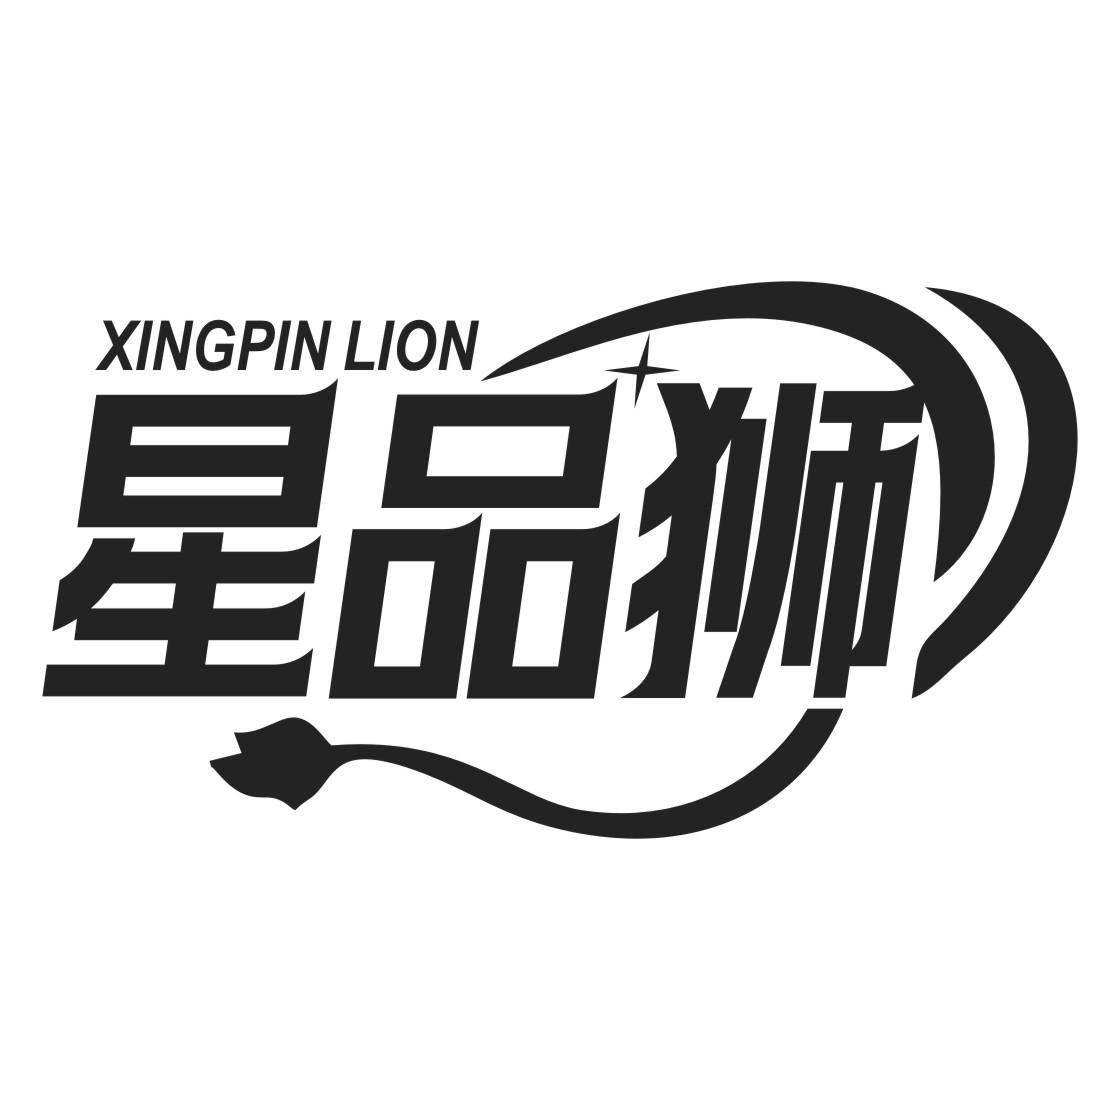 星品狮 XINGPIN LION